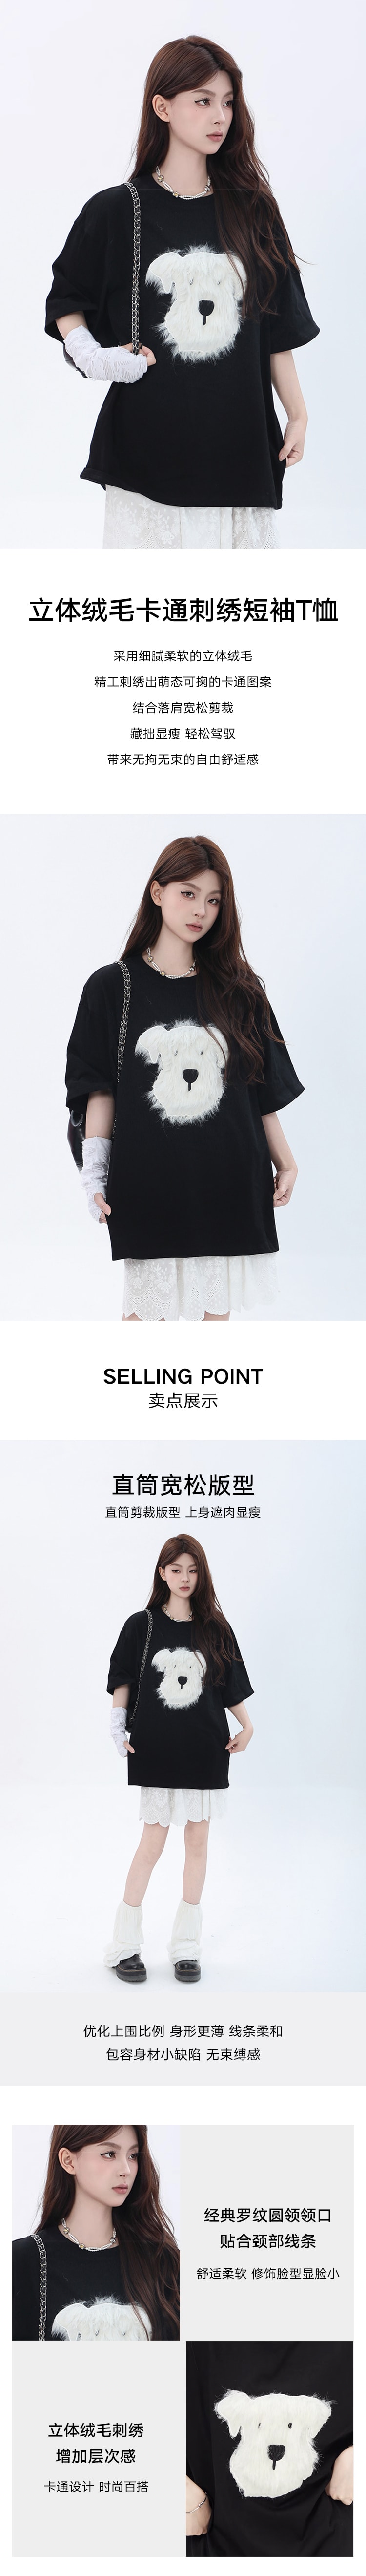 【中国直邮】HSPM 新款立体绒毛卡通刺绣短袖T恤 黑色 M